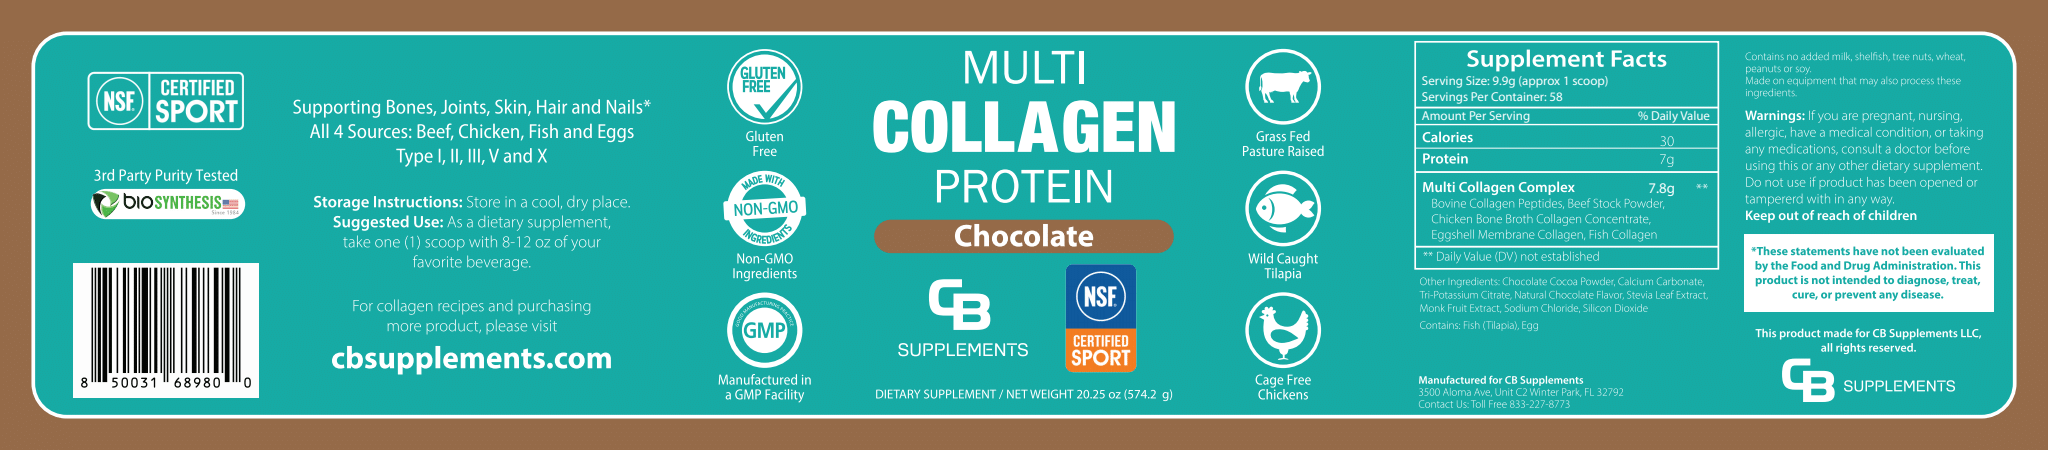 NSF Chocolate Multi Collagen Protein Powder - Label